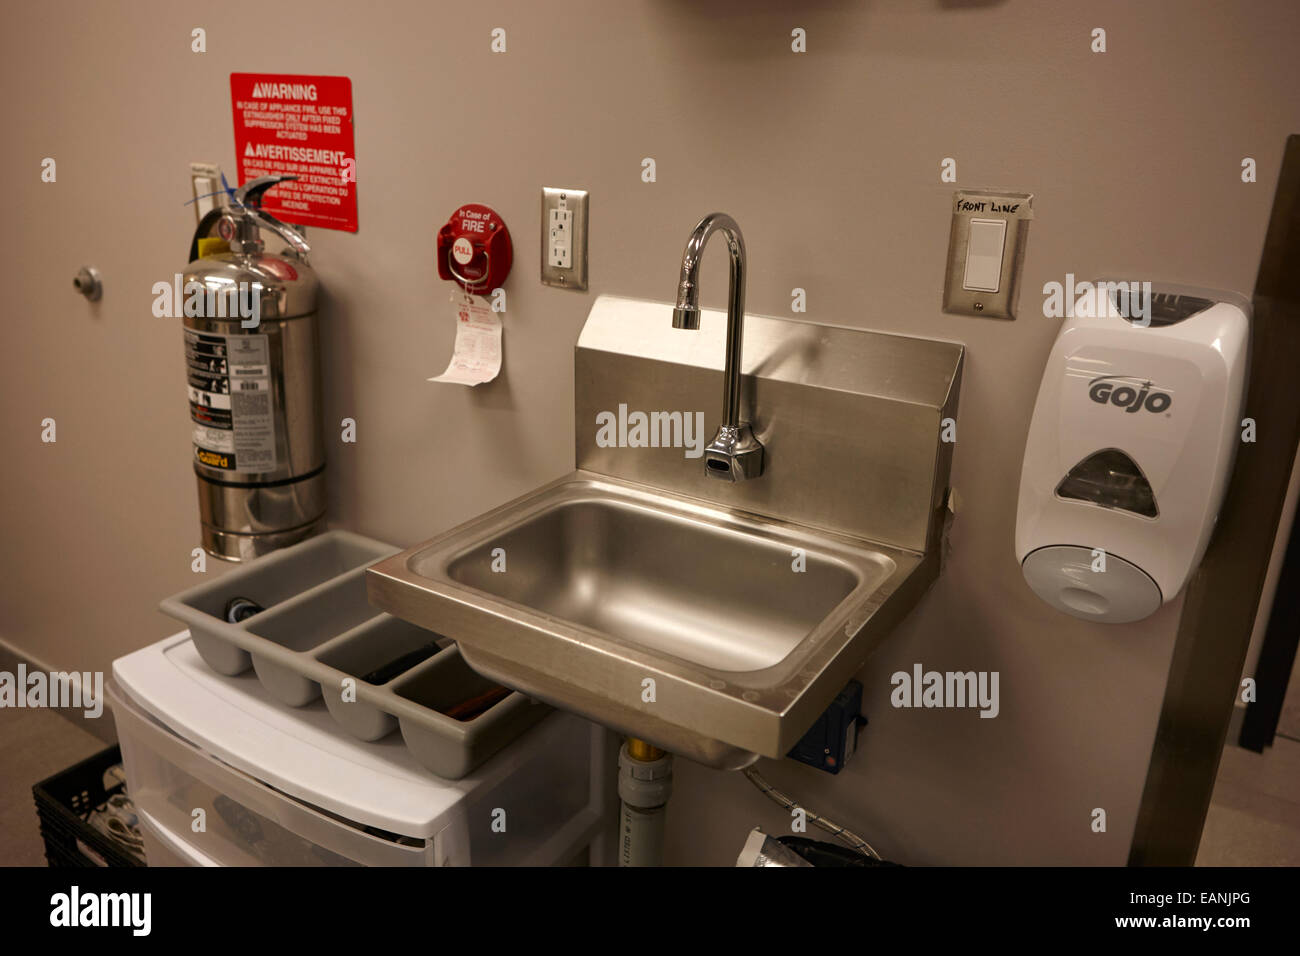 hand sink in kitchen